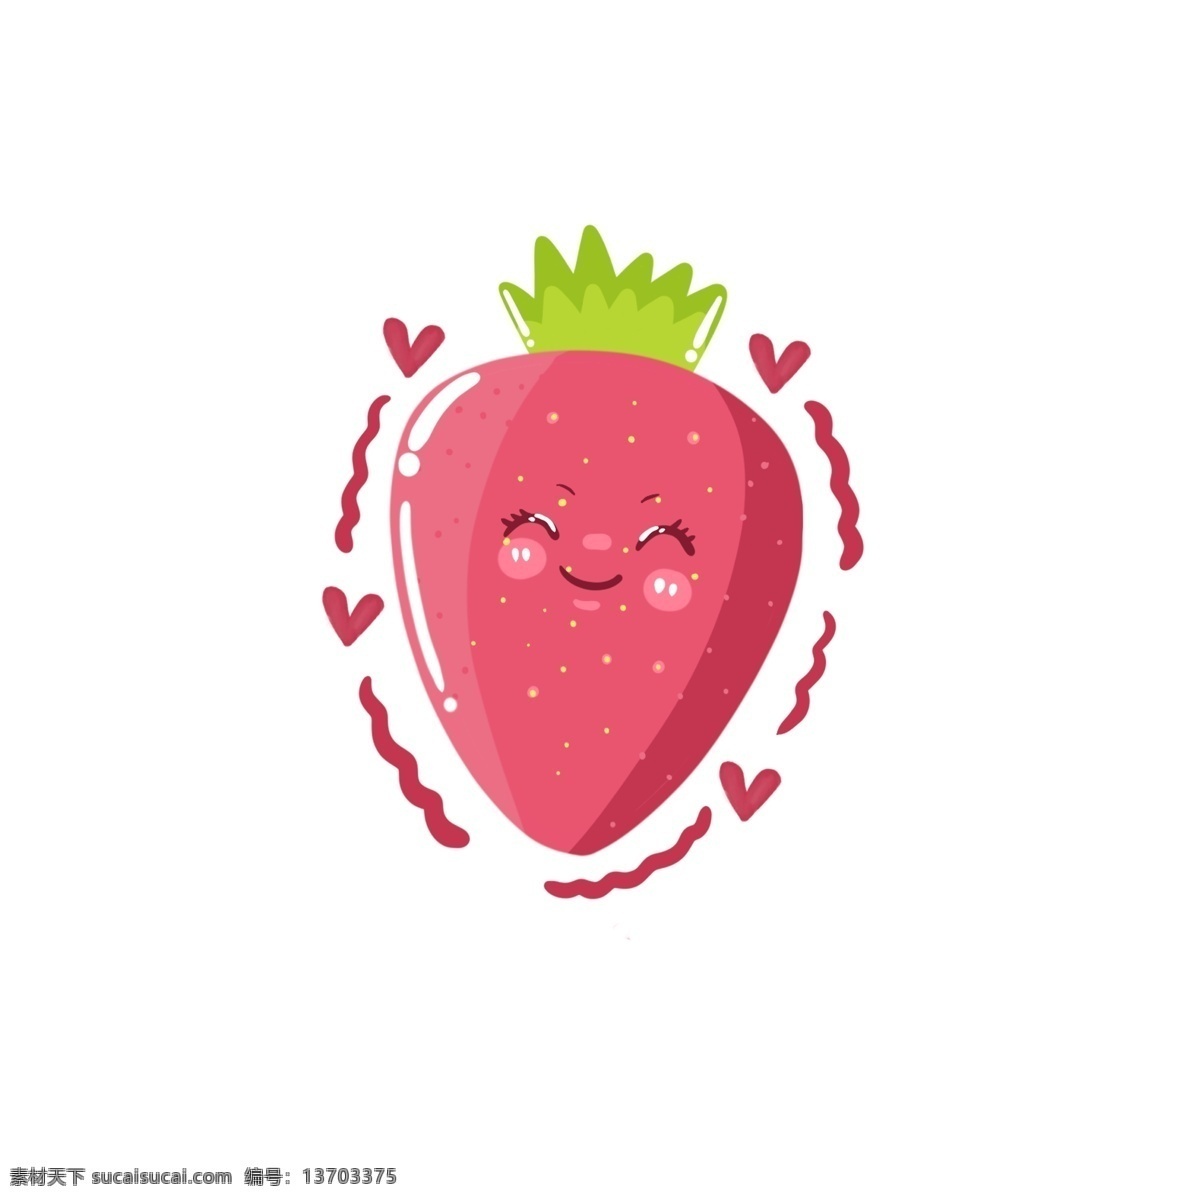 笑脸 卡通 草莓 形象 简约 水果 可爱 粉色